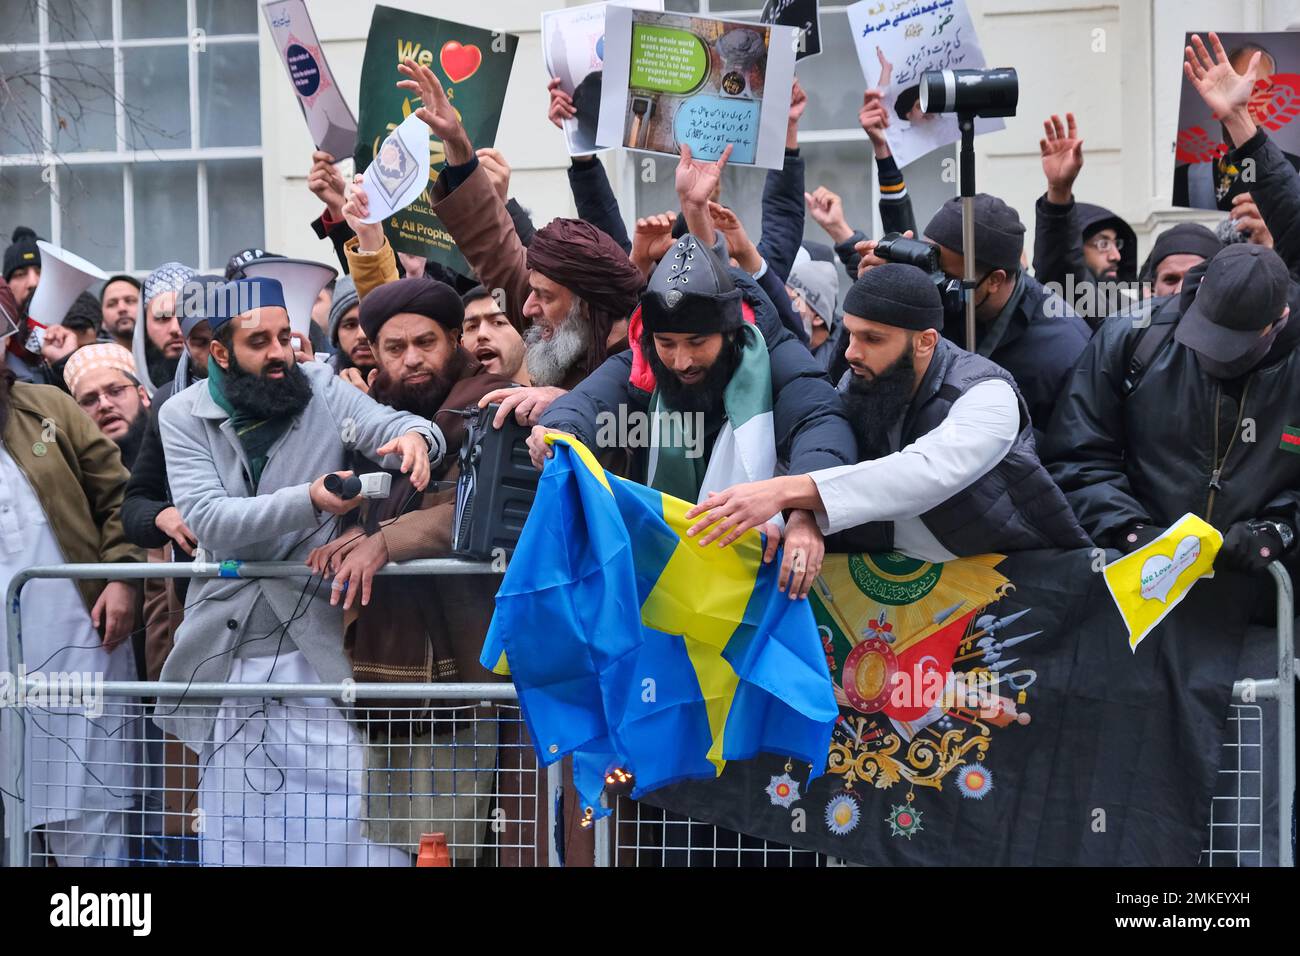 London, Großbritannien. 28. Januar 2023 Demonstranten versuchen, die schwedische Flagge anzuzünden. Muslimische Demonstranten haben sich versammelt, um die Schändung des Koran durch den rechtsextremen Politiker Rasmus Paludan anzuprangern - durch Verbrennung und Edwin Wagensveld in den Niederlanden, der den heiligen Text zerrissen hat. Das ursprüngliche Feuer des dänisch-schwedischen Paludan wurde vor der türkischen Botschaft in Stockholm durchgeführt, und die schwedische Regierung versuchte, sich von der Demonstration zu distanzieren. Kredit: Elfte Stunde Fotografie/Alamy Live News Stockfoto